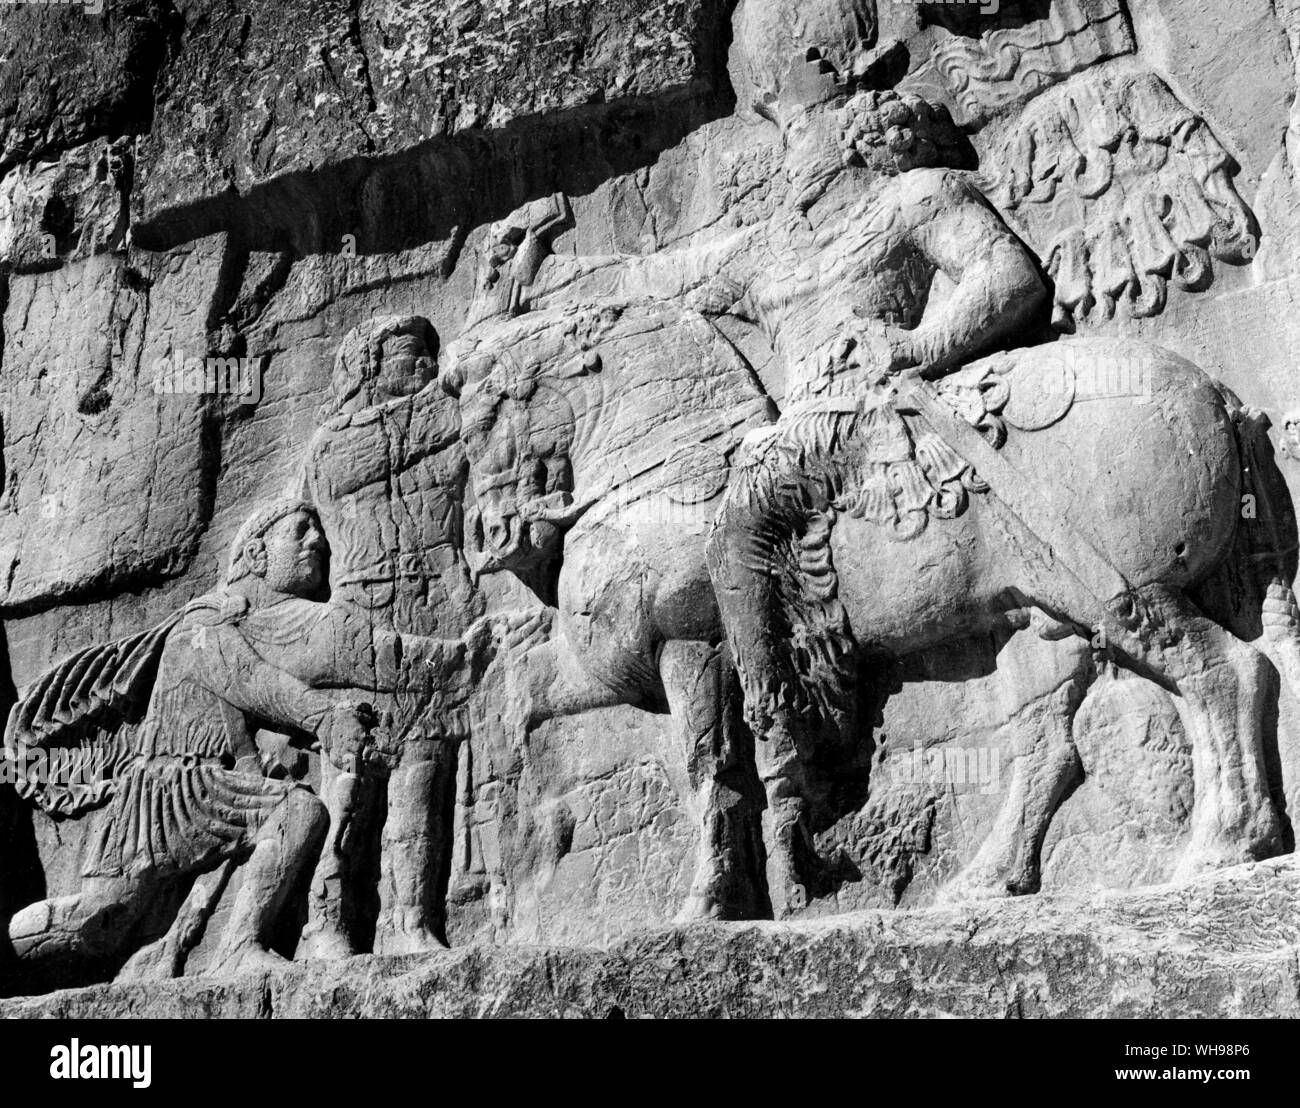 La guerra orientale/Iran, Persepoli. Incisioni rupestri sulle tombe degli imperatori nelle rovine di Persepoli. Era un tempo capitale della Persia, 2000 anni fa.. Foto Stock